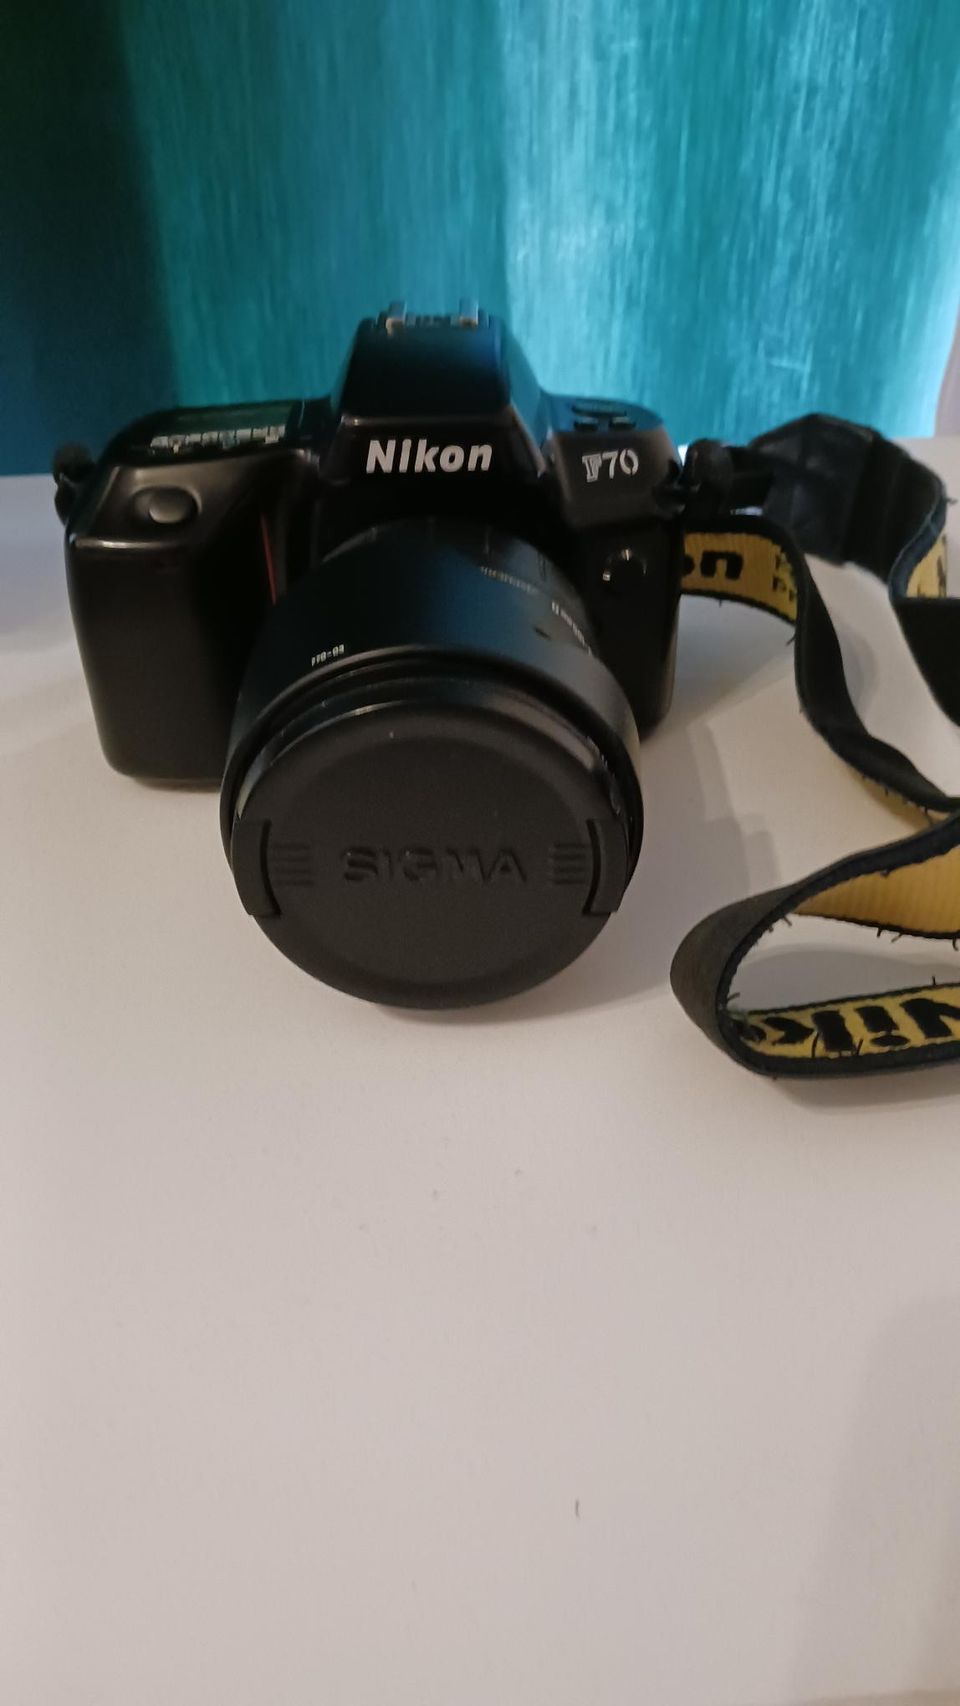 Nikon F70 järjestelmäkamera